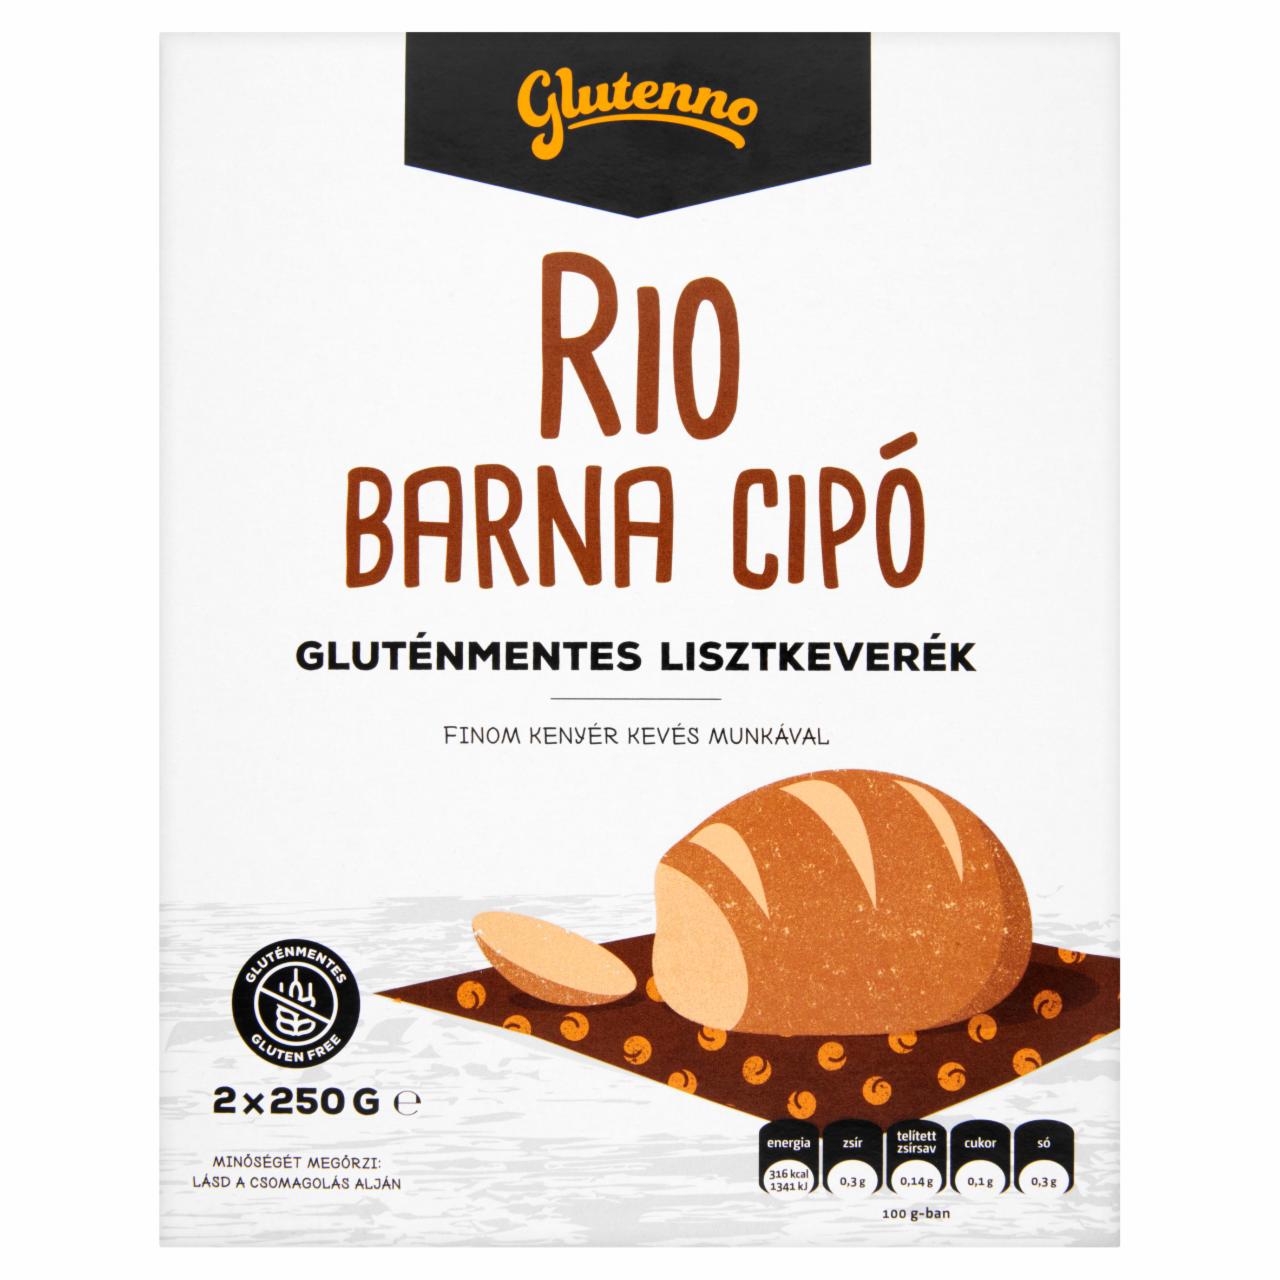 Képek - Glutenno Rio gluténmentes lisztkeverék barna cipóhoz 2 x 250 g